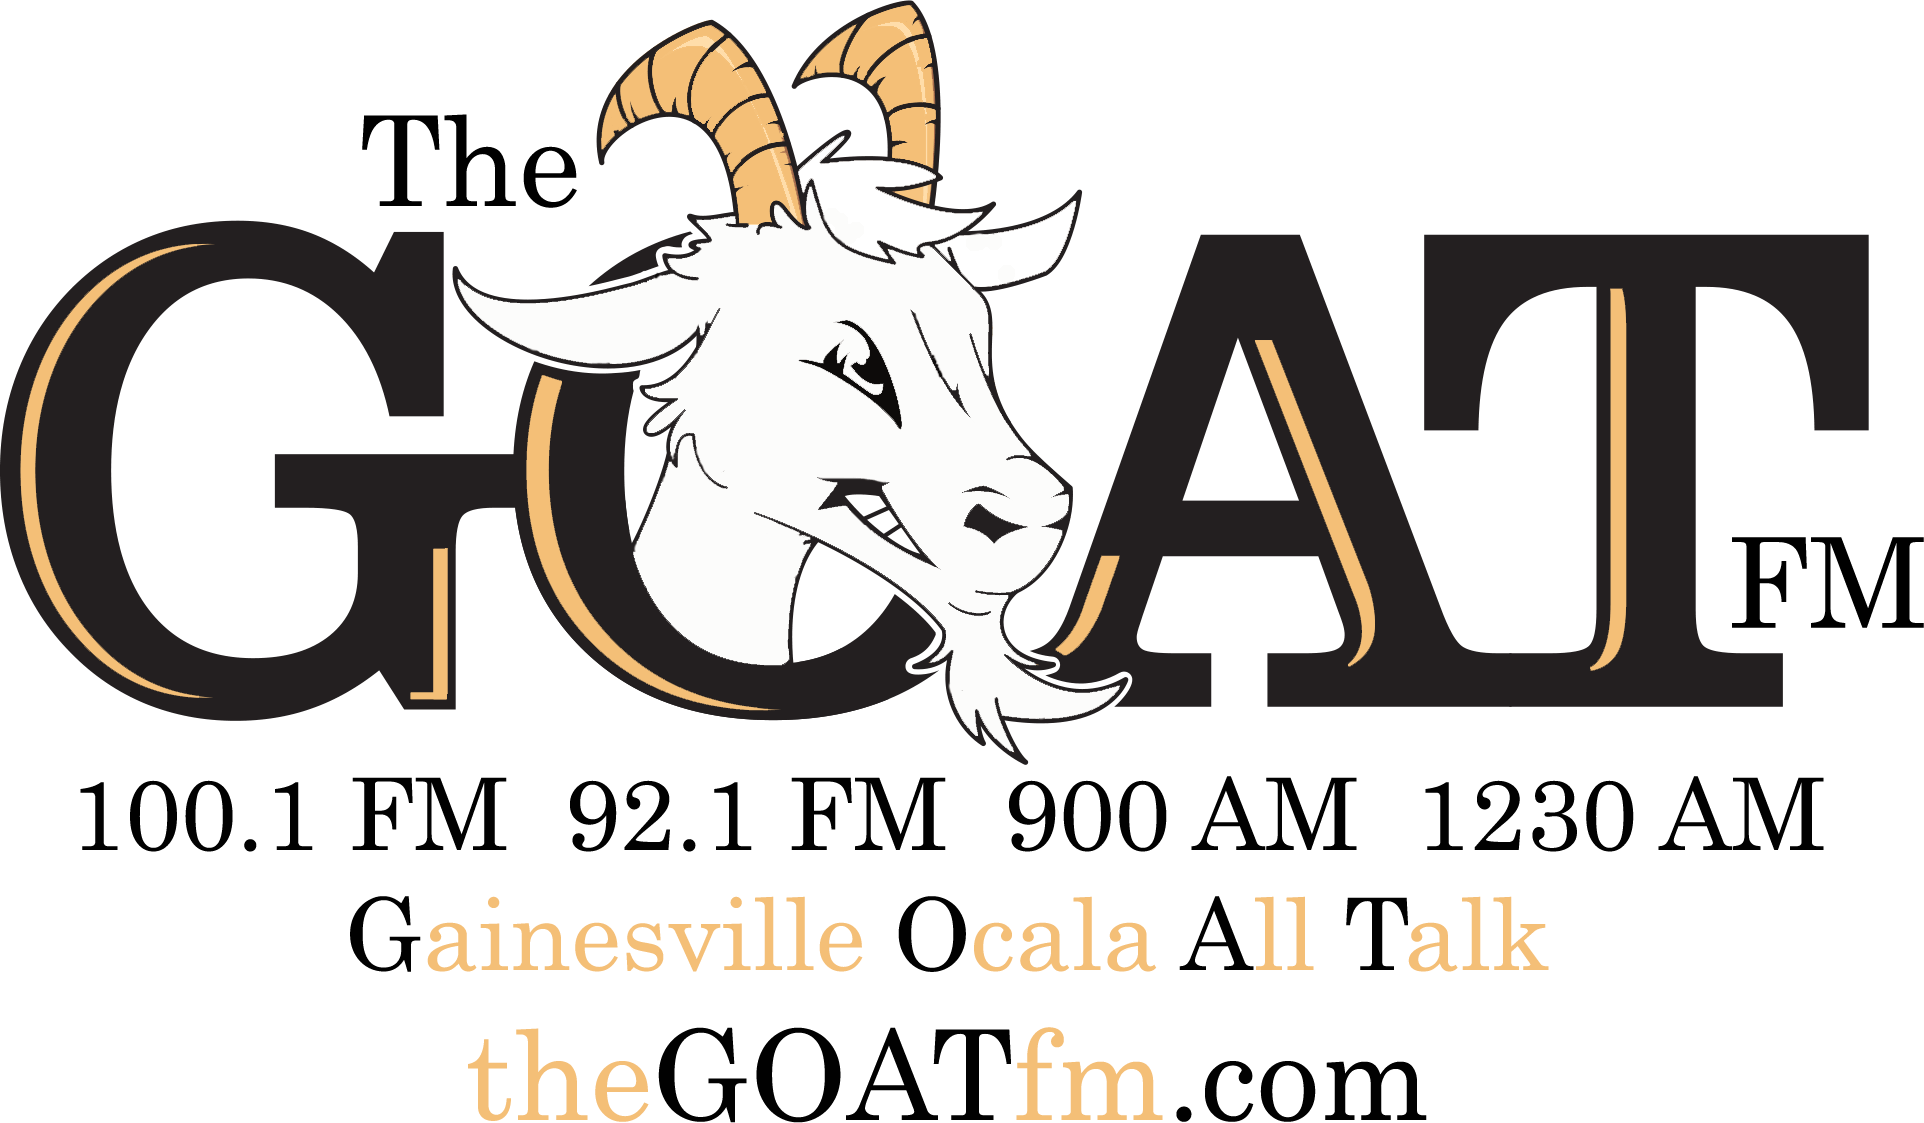 Goat com. Goat лого. Логотип g.o.a.t. Okai эмблема. ФК Goats лого.